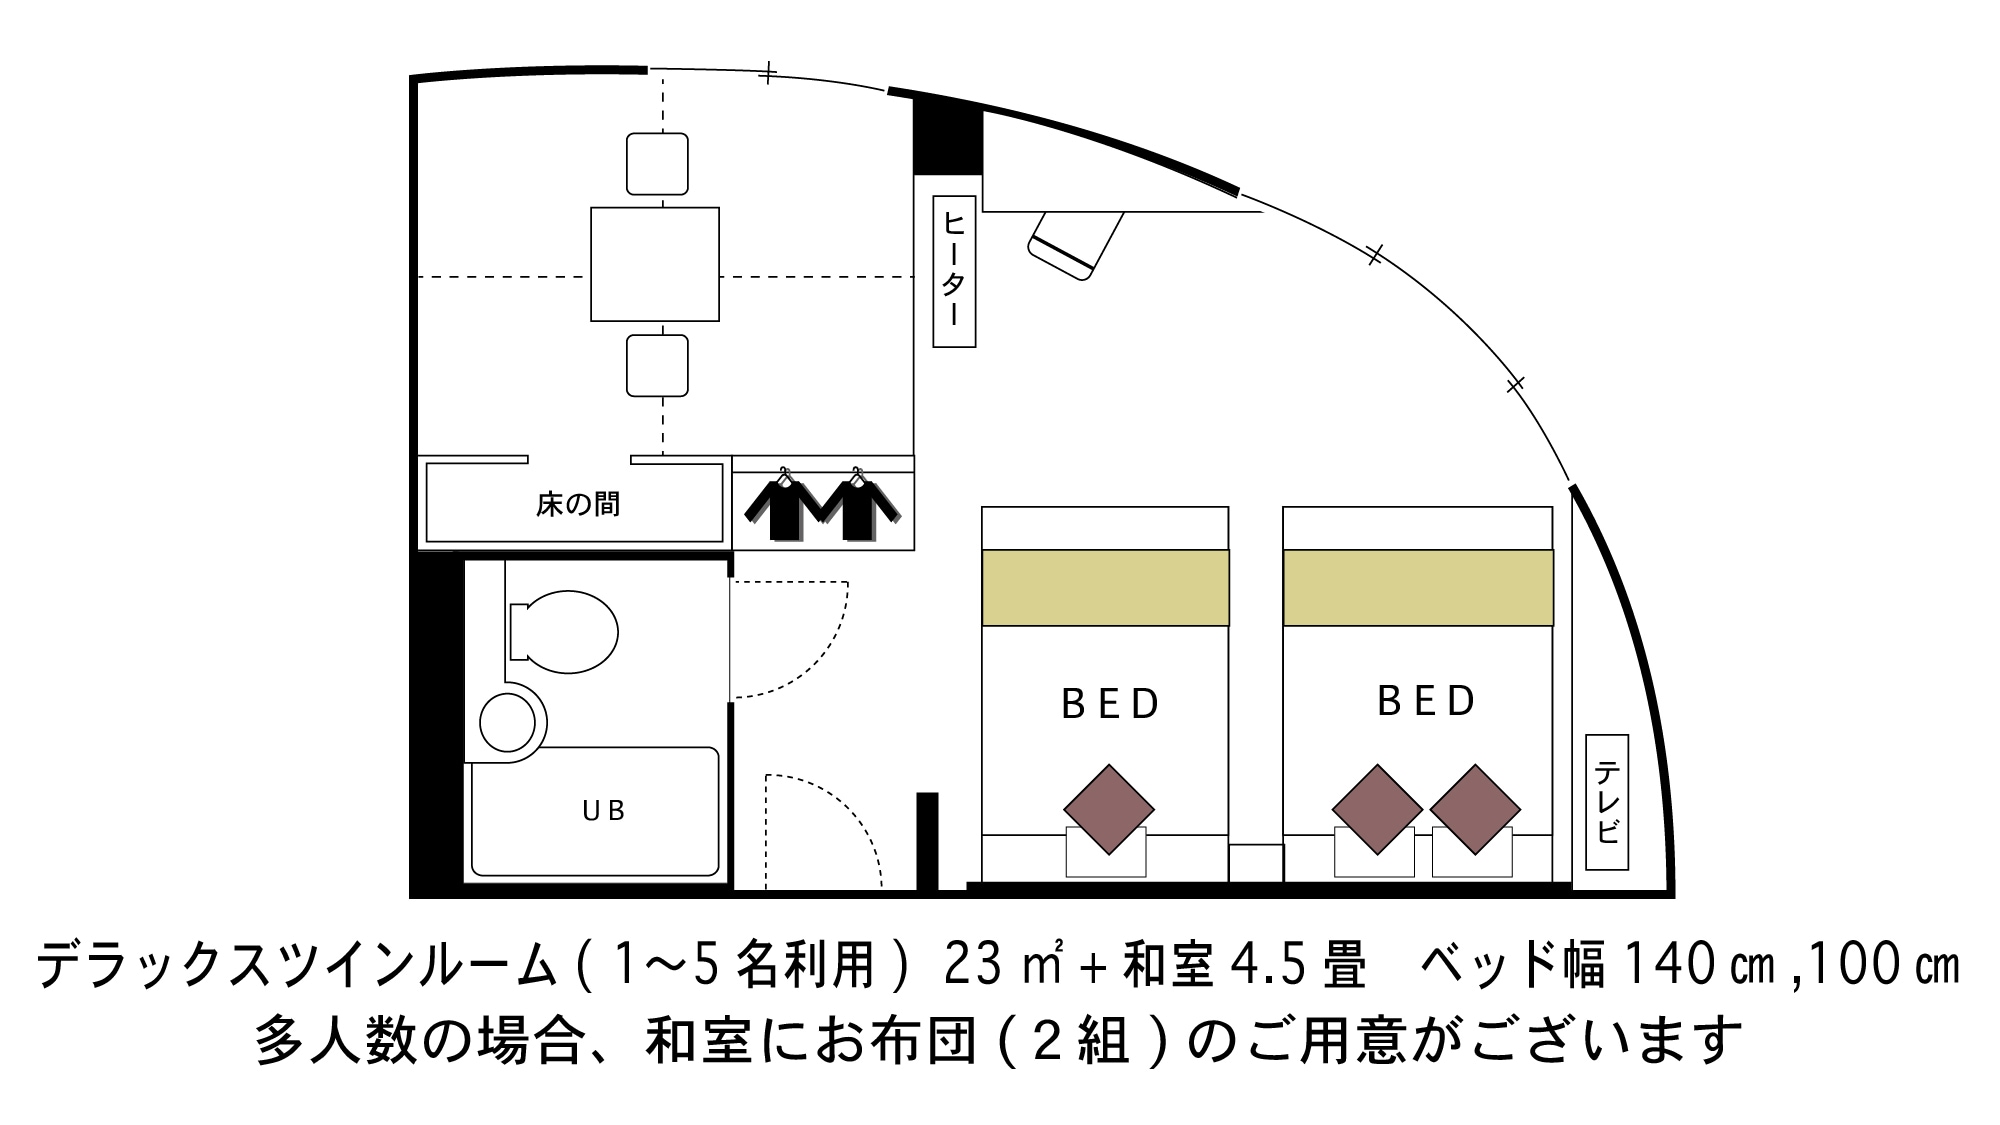 ☆ Deluxe Twin Room ☆ ■ Area 23 square meters ■ ★ Floor plan ★